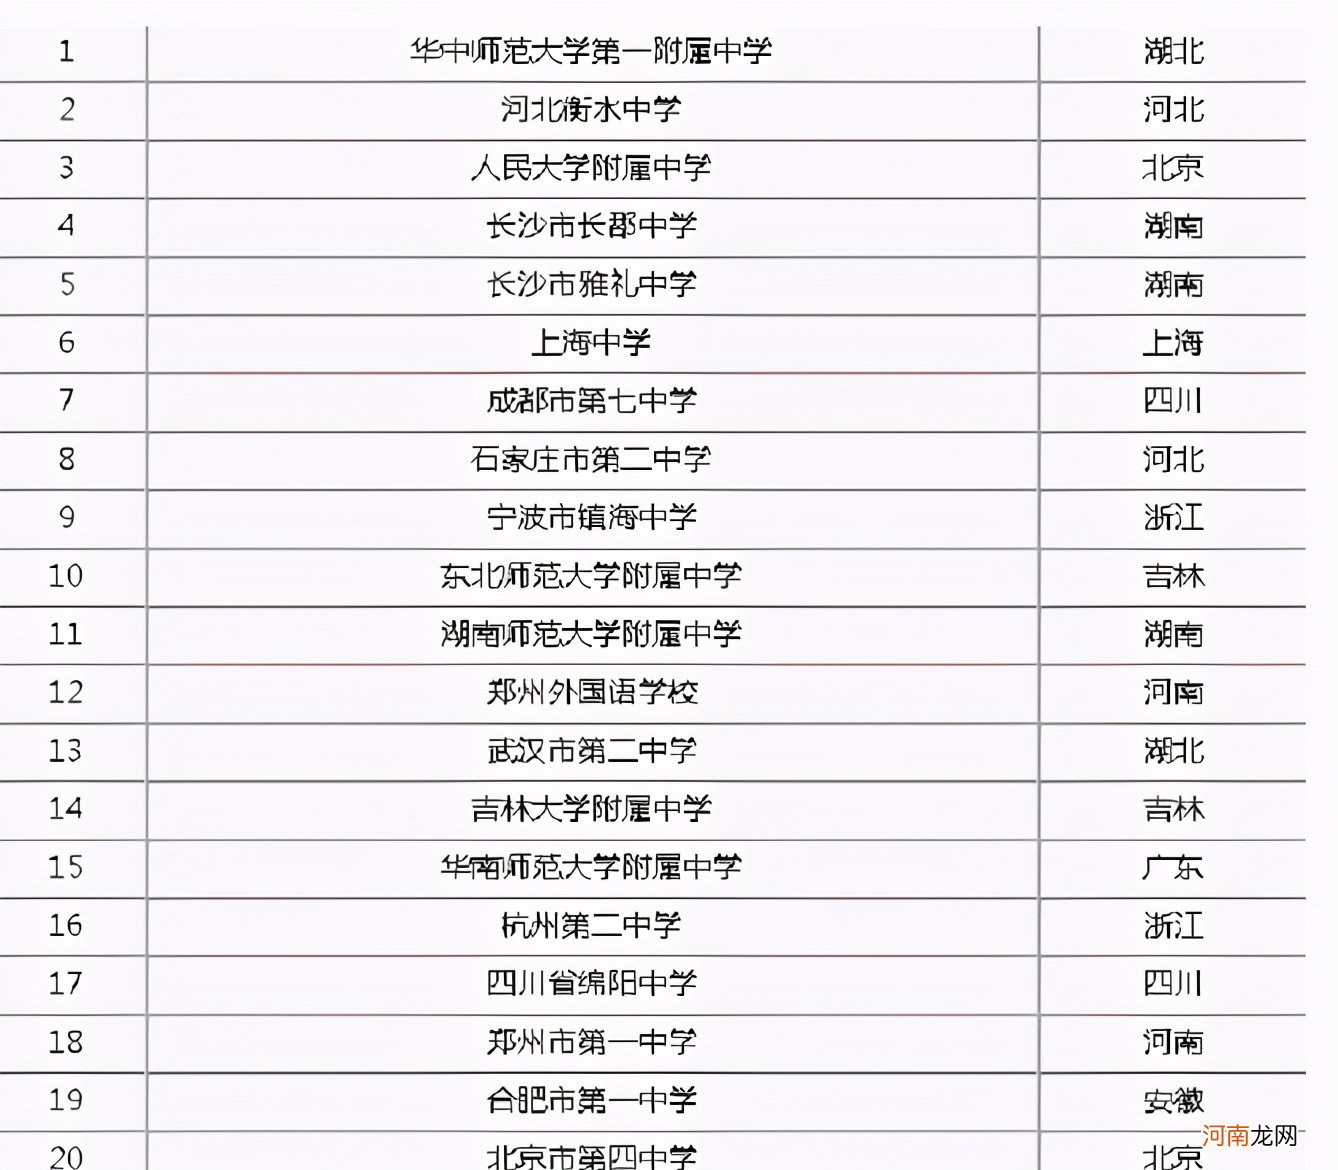 中国最好的高中学校排名前十 中国十大高中排名